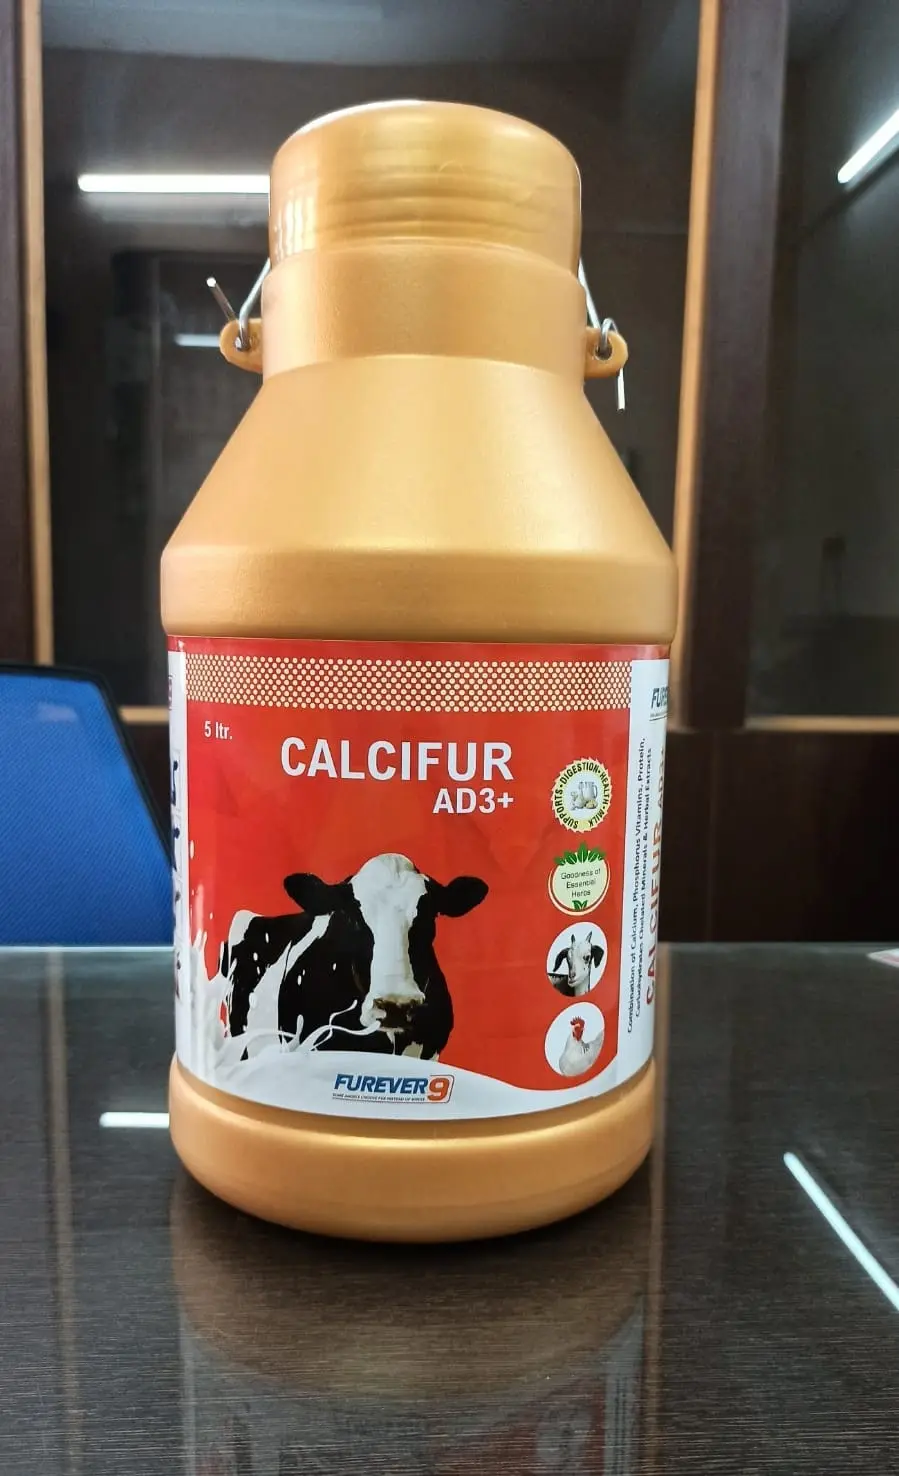  furever 9 Calcifur AD3+ 5L